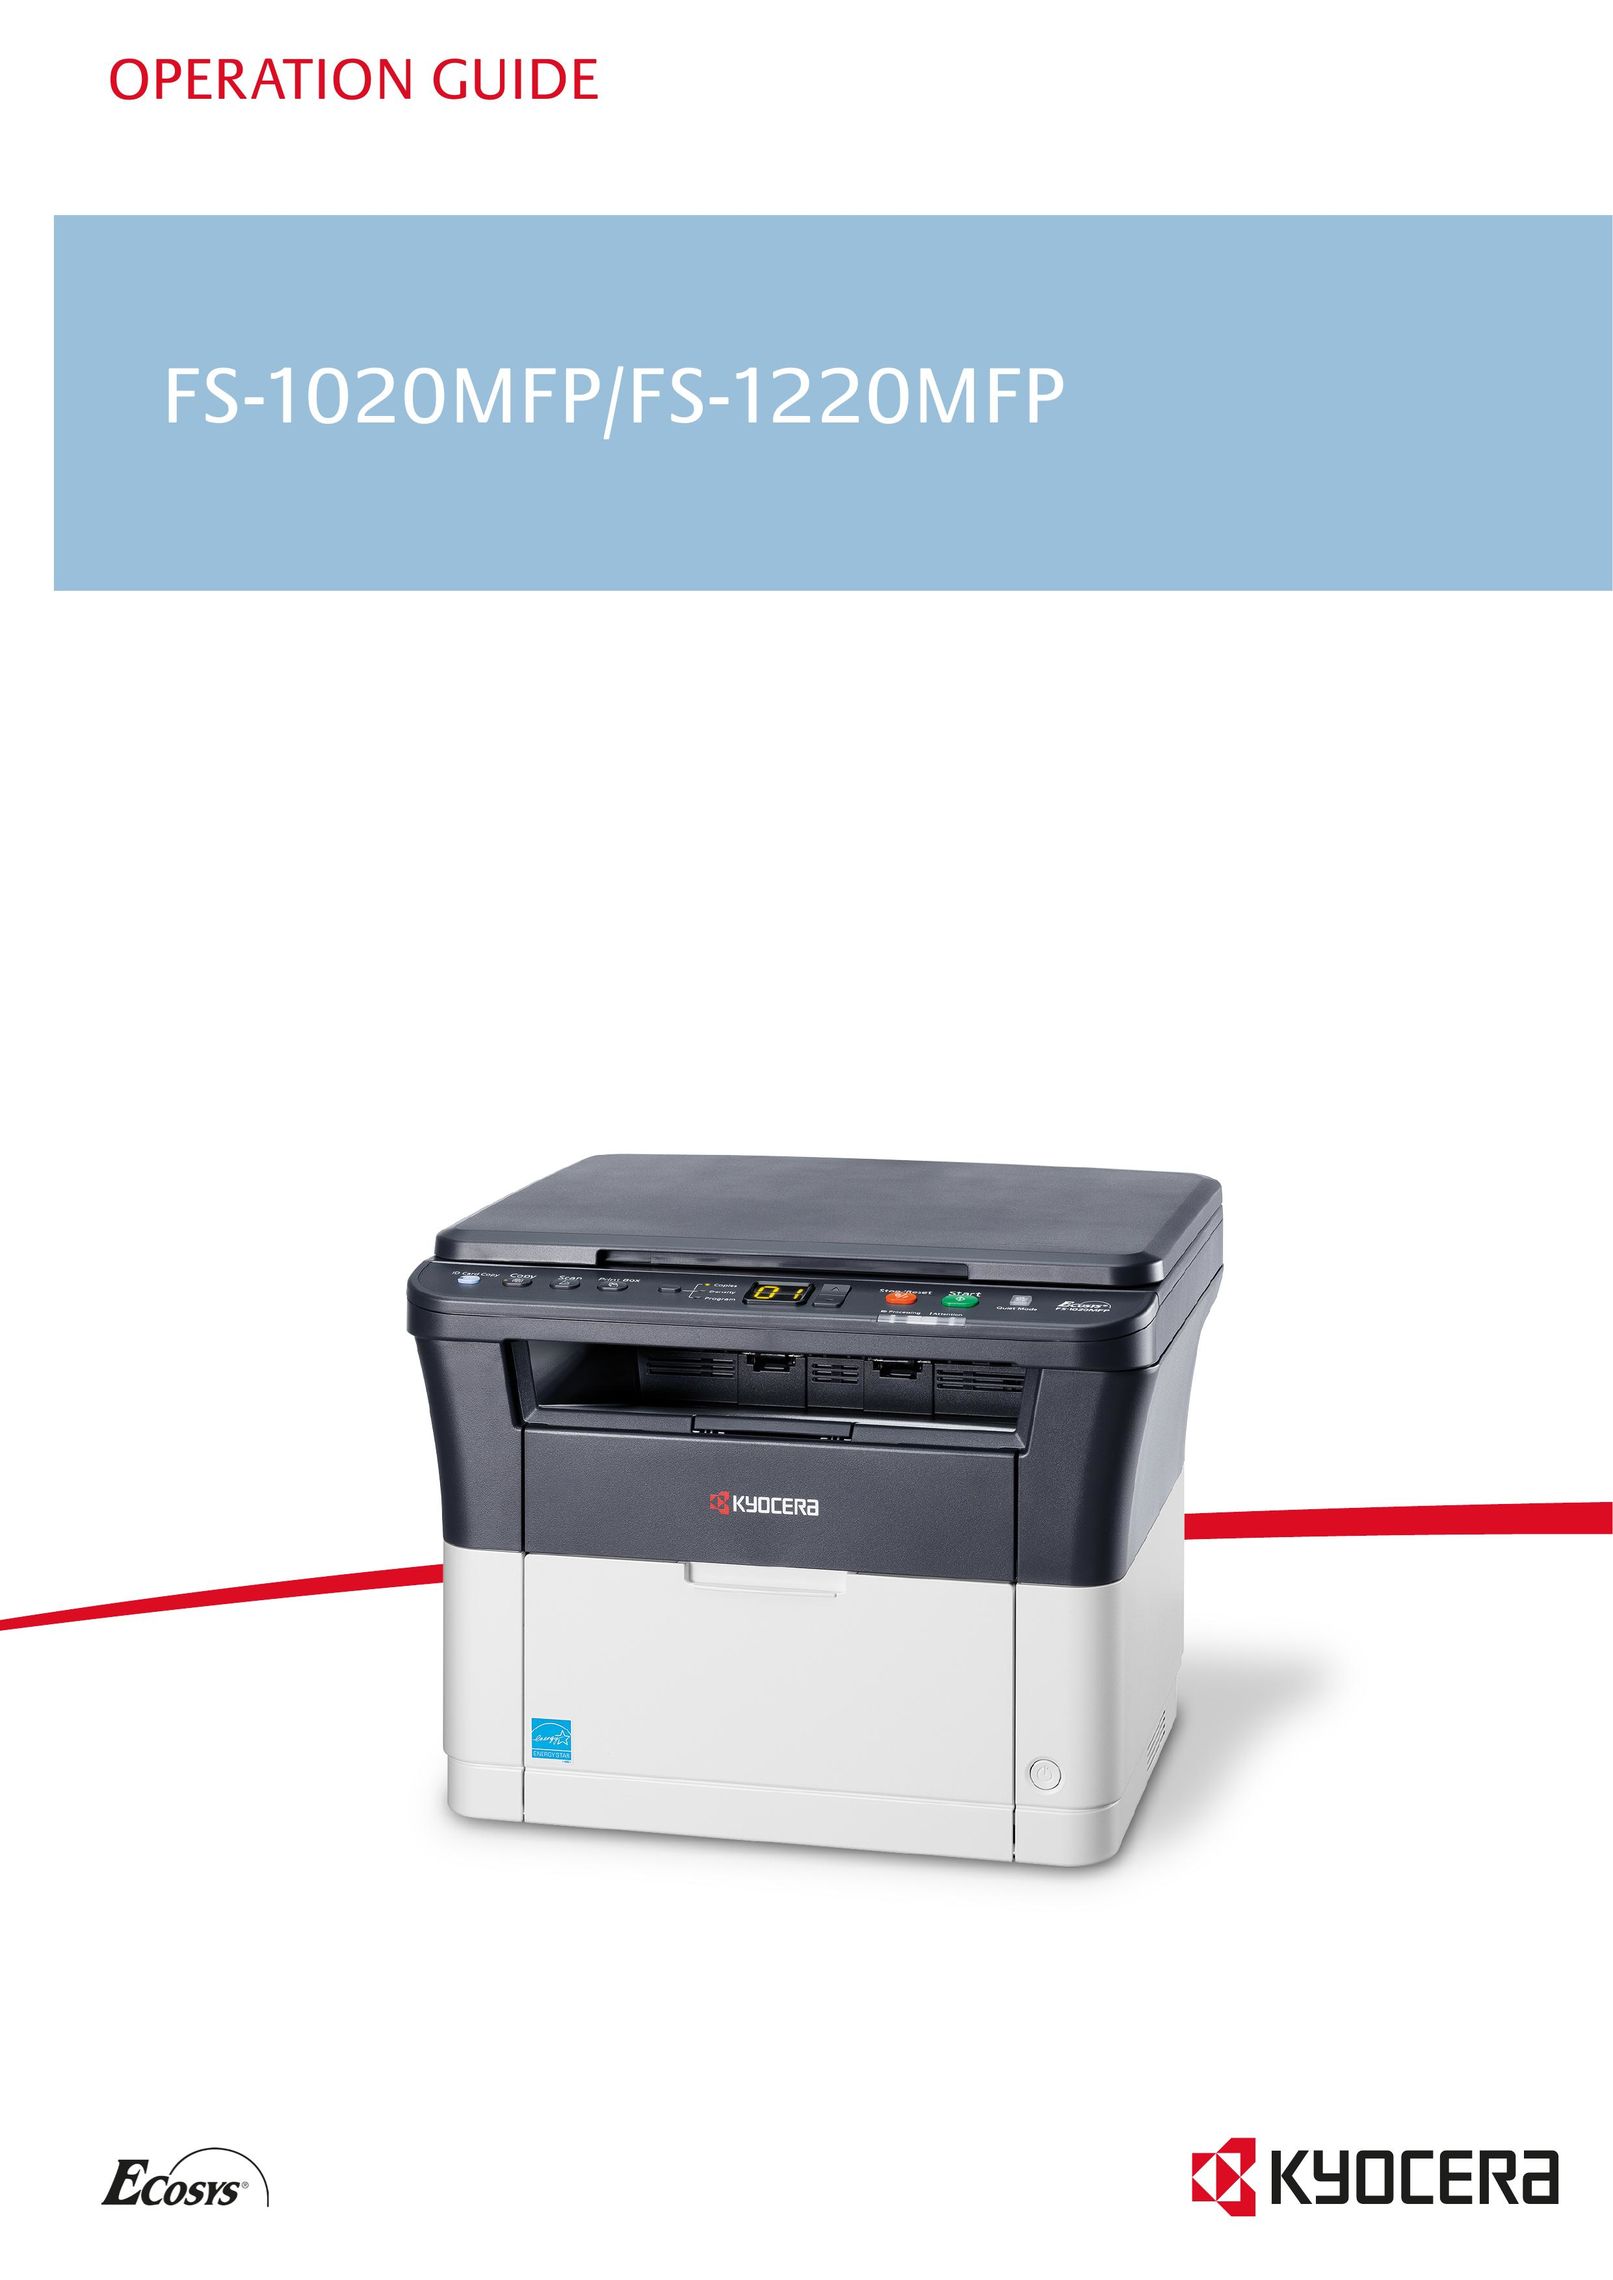 Kyocera FS-1020MFP All in One Printer User Manual